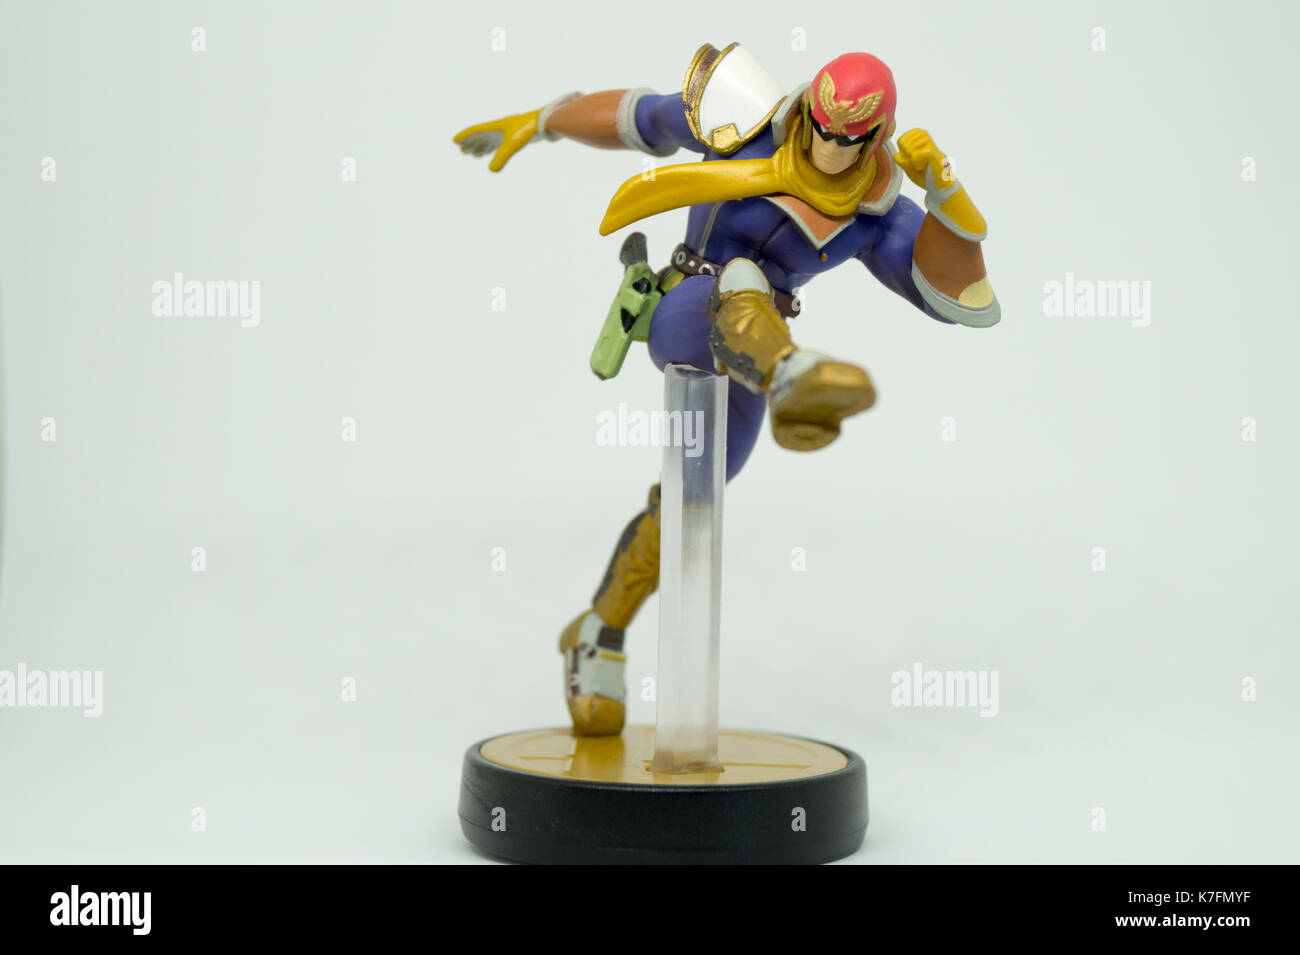 Nintendo Super Smash Bros Amiibo Collection Figure Captain Falcon Stock  Photo - Alamy